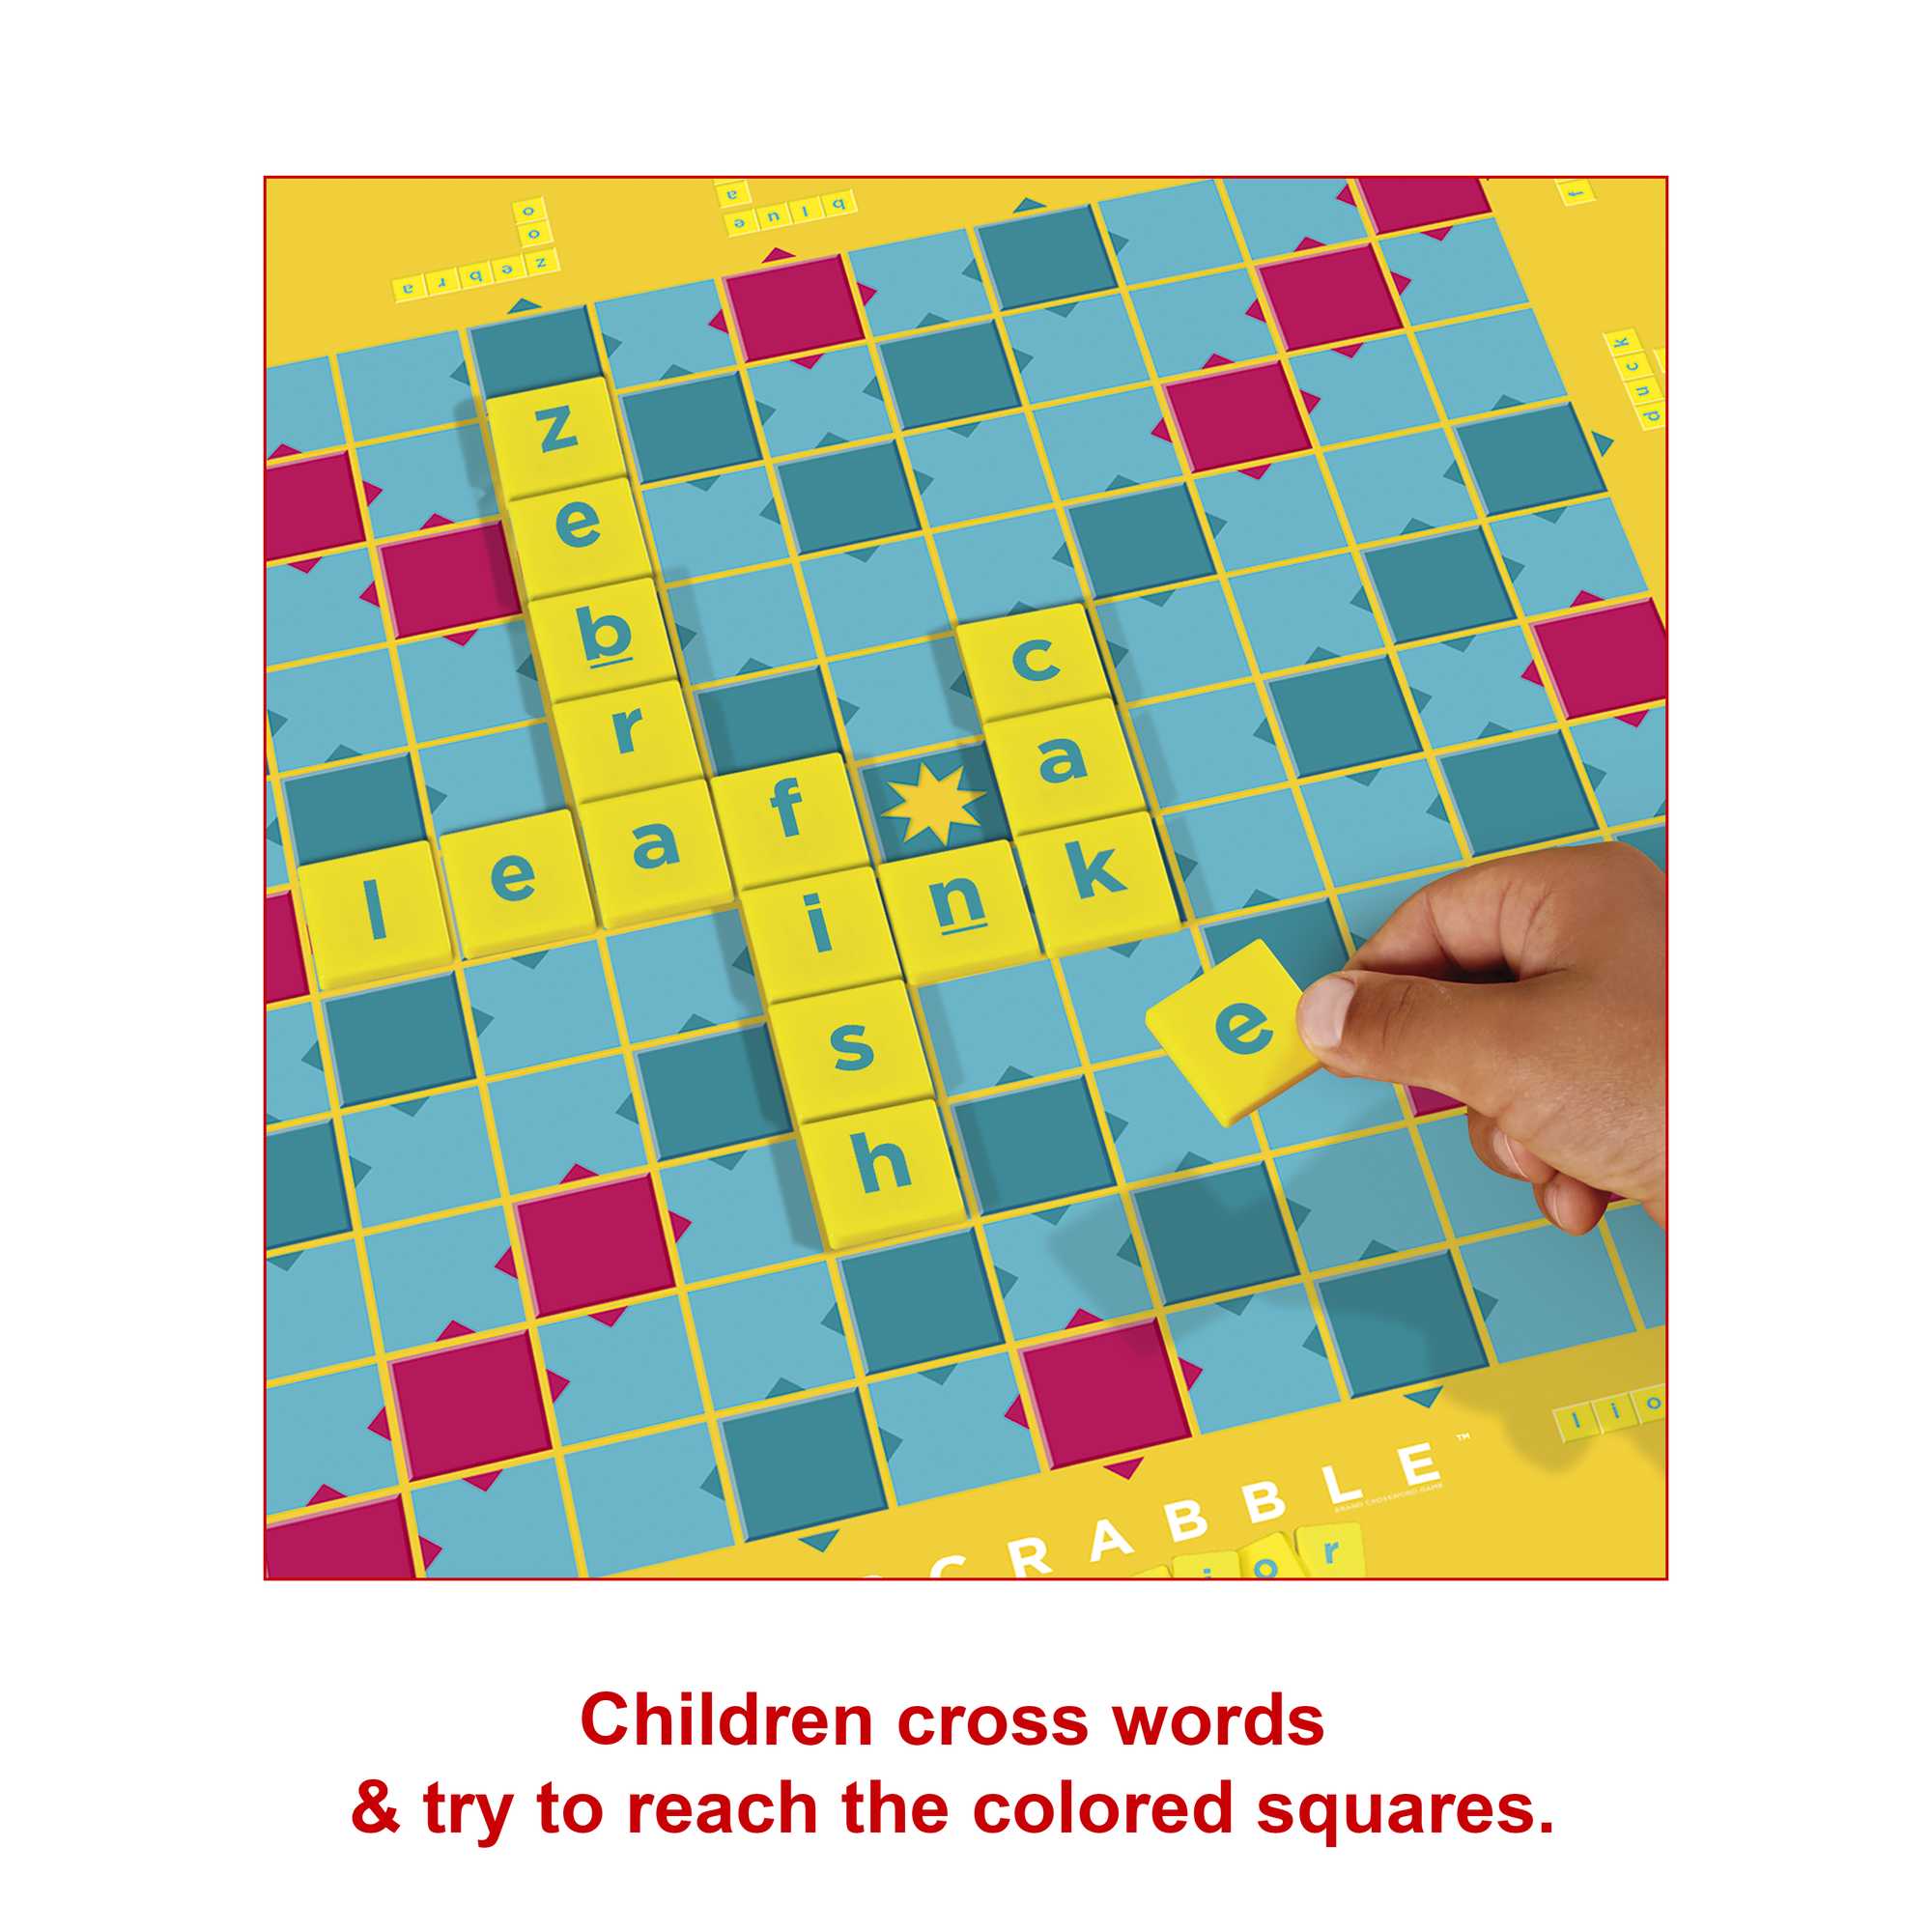 Scrabble Junior, Version Française – Mattel –